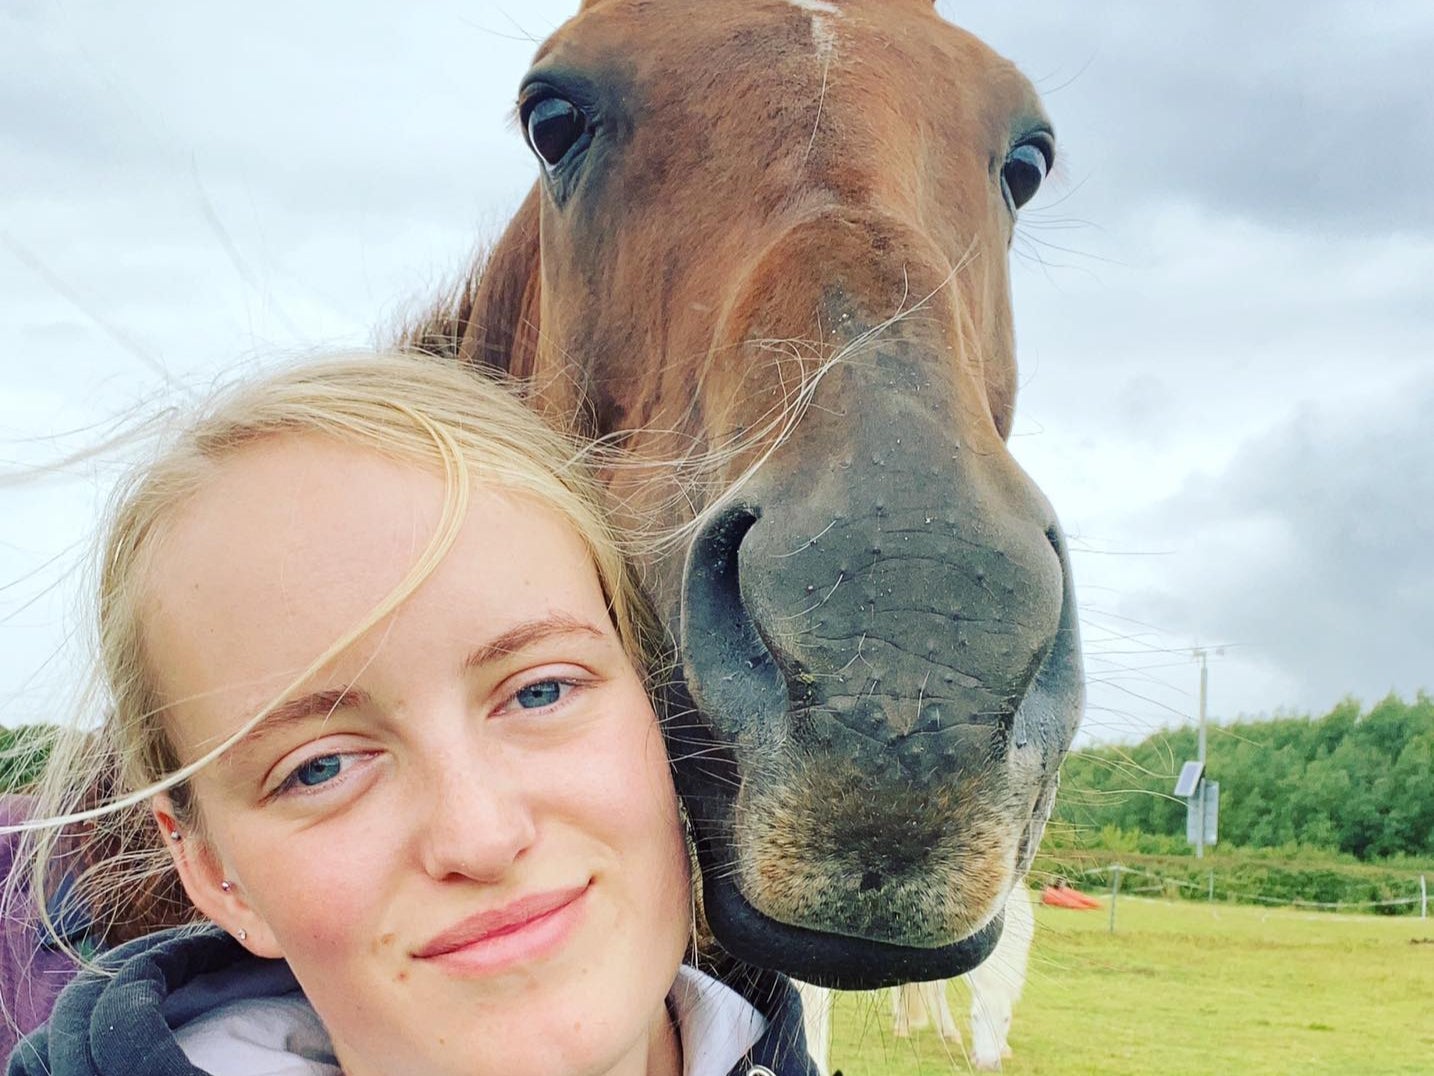 Keen horse rider Gracie Spinks, 23, was found dead in a field in the Derbyshire village of Duckmanton